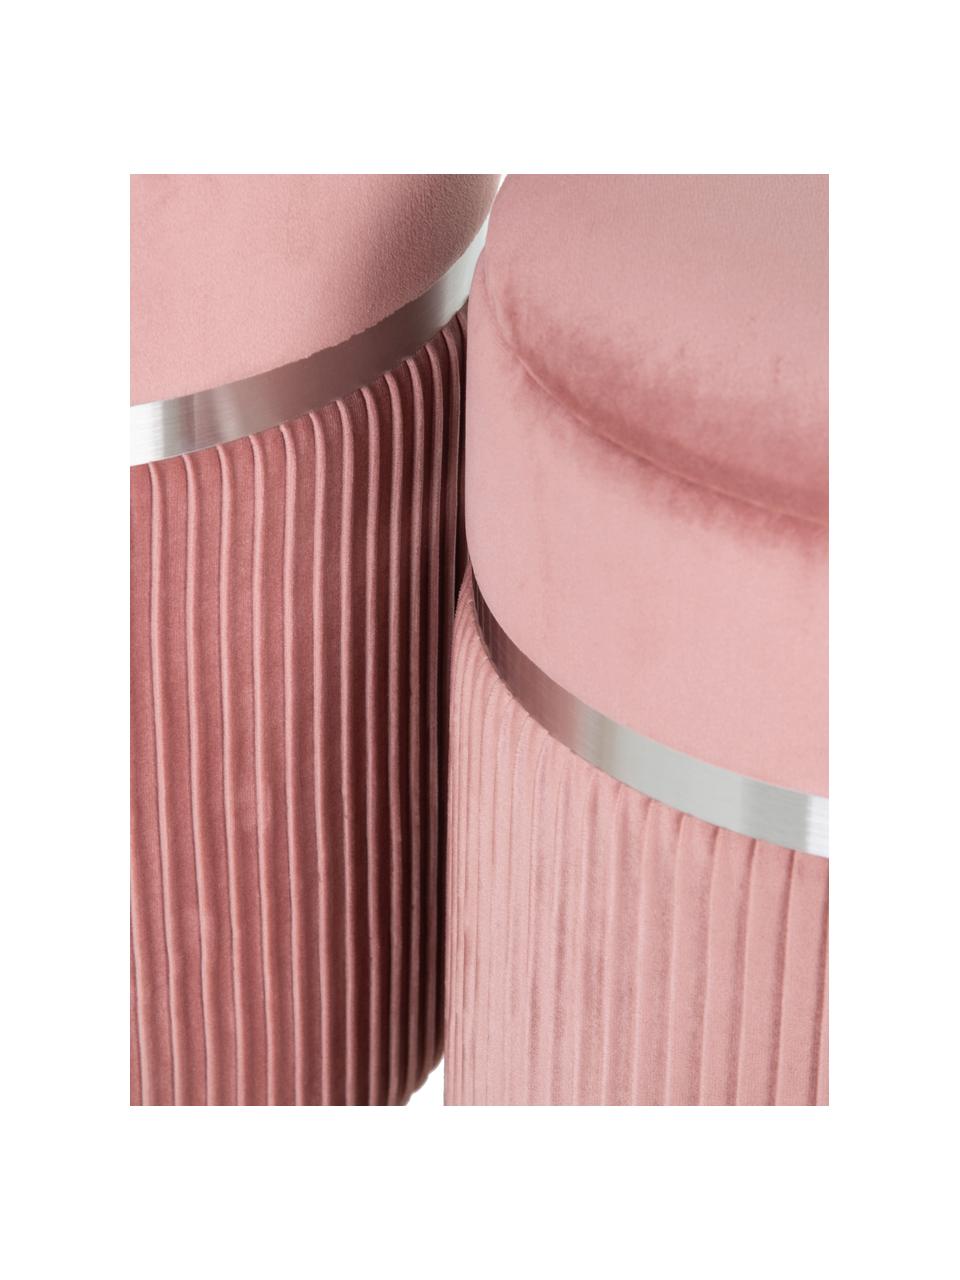 Fluwelen poefenset Chest met opbergruimte, 2-delig, Bekleding: polyester (fluweel), Roze, zilverkleurig, Set met verschillende formaten